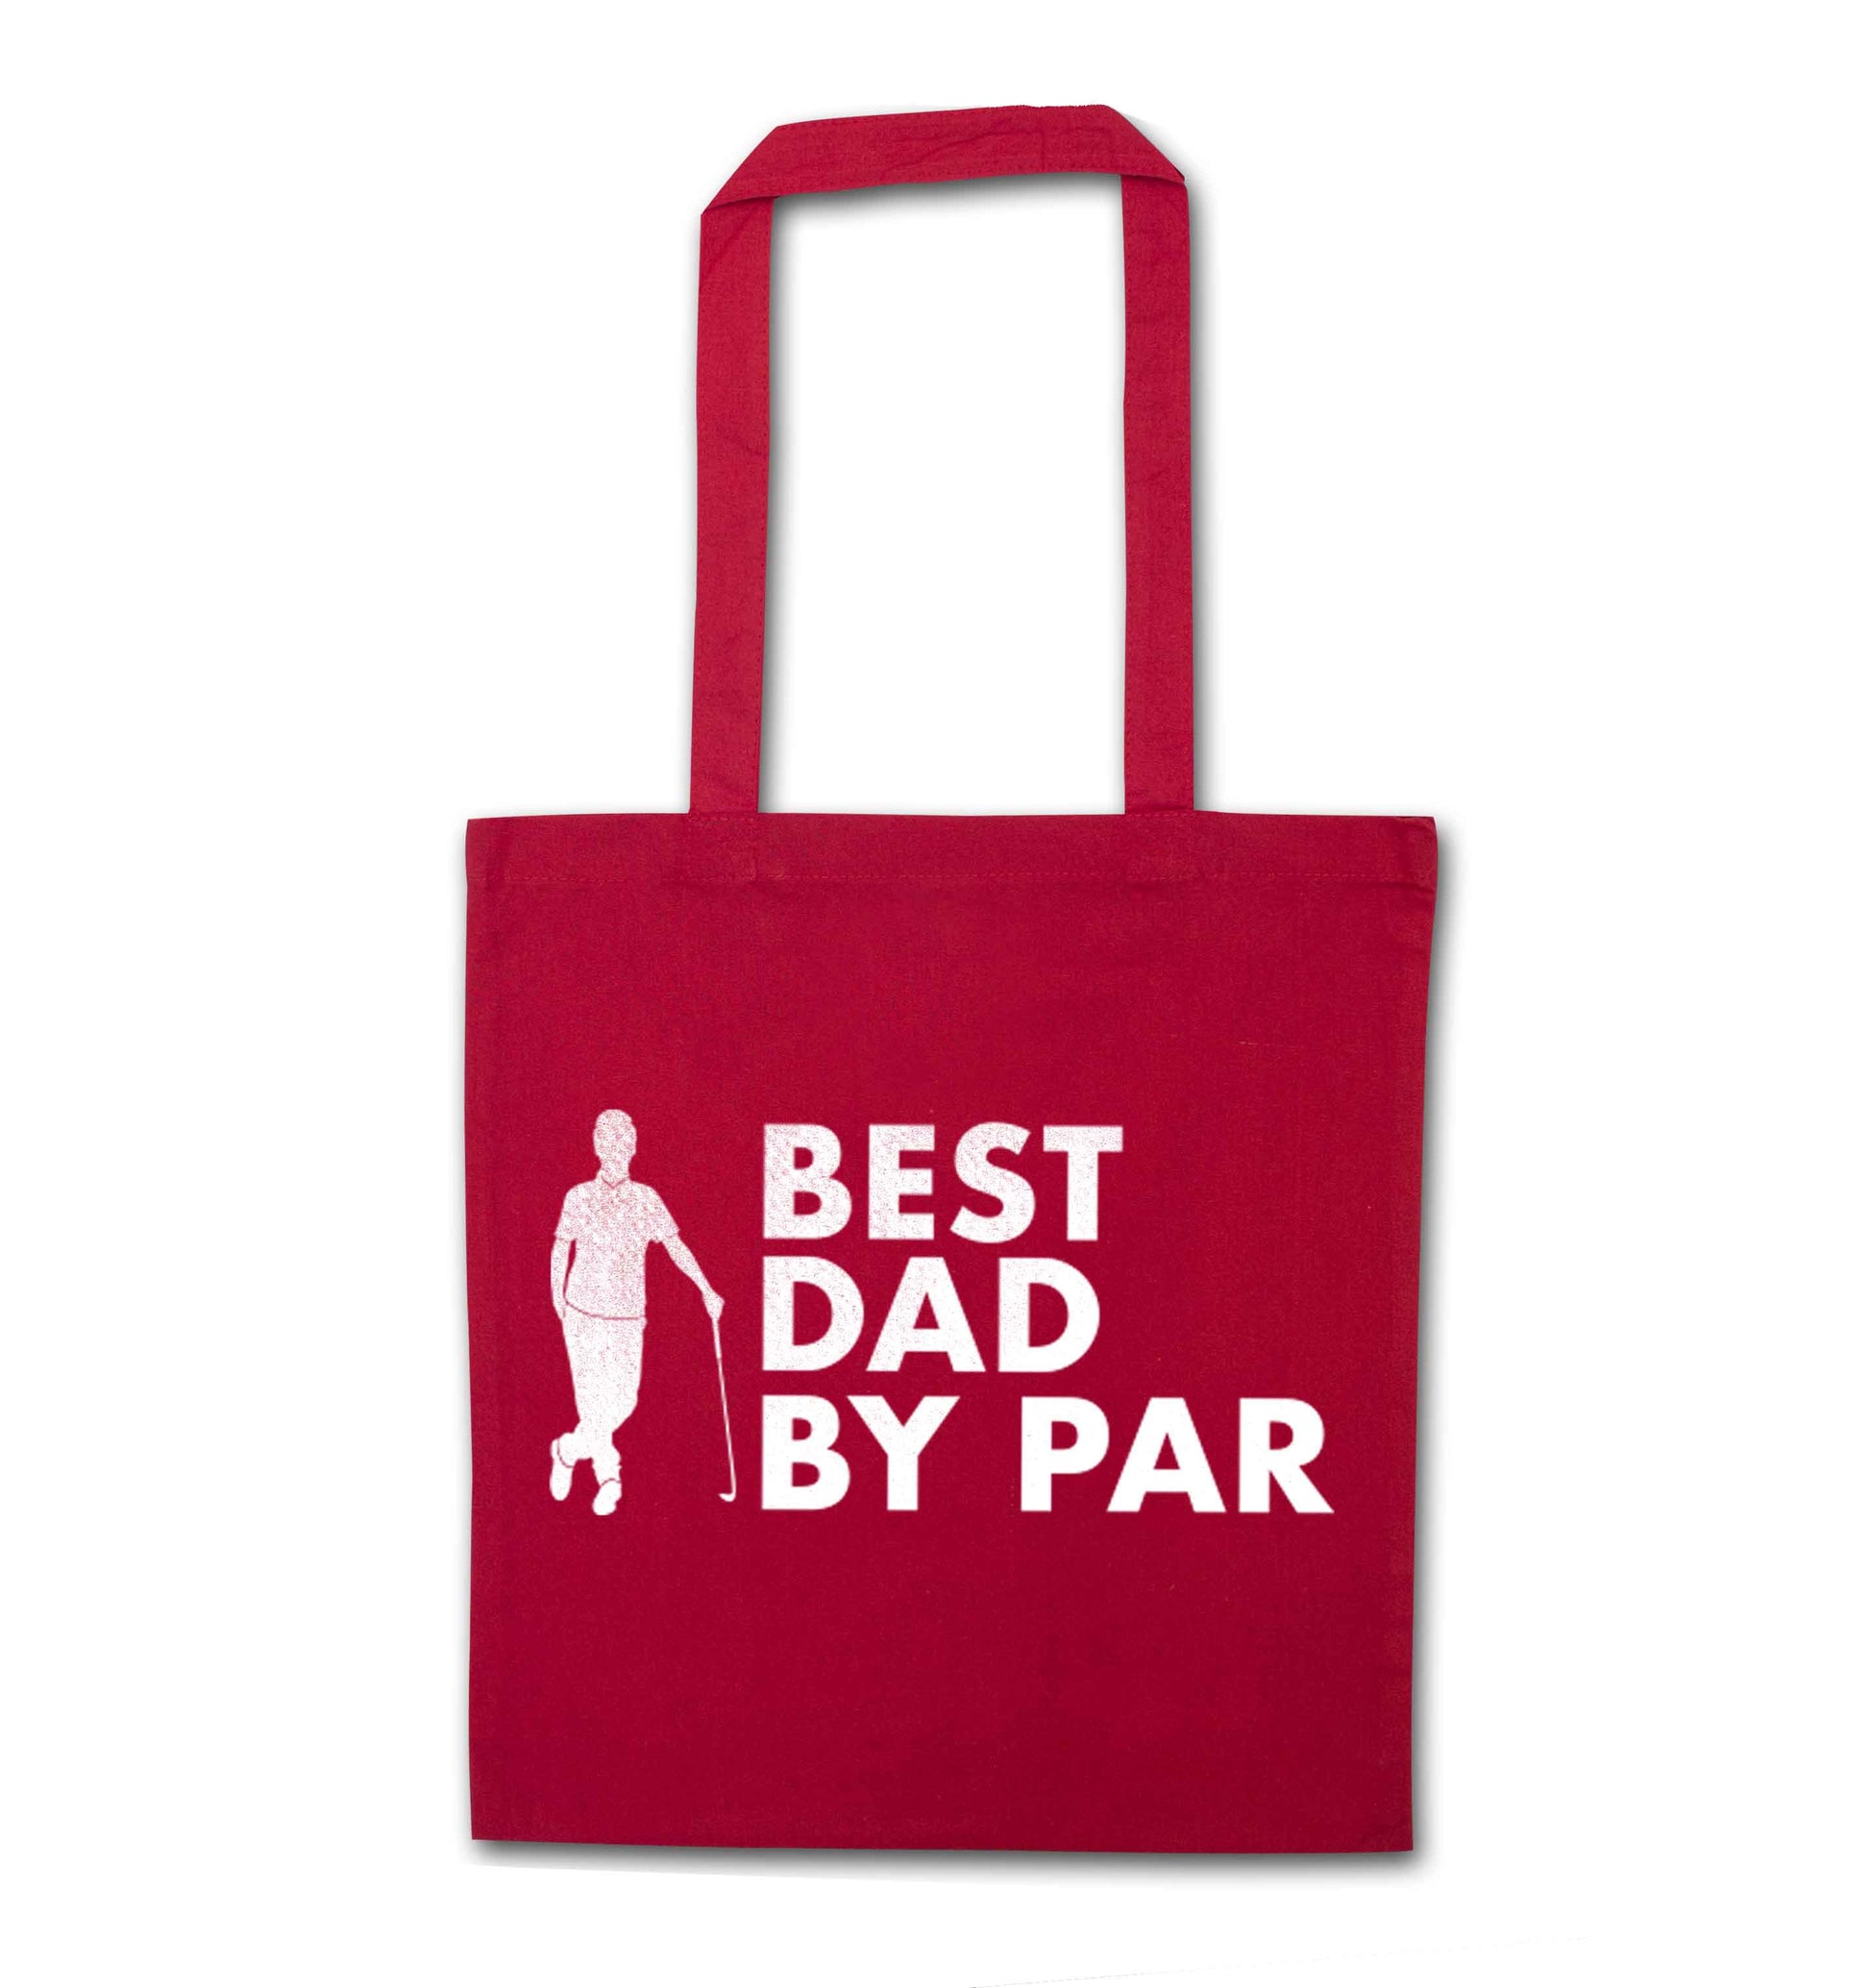 Best dad by par red tote bag